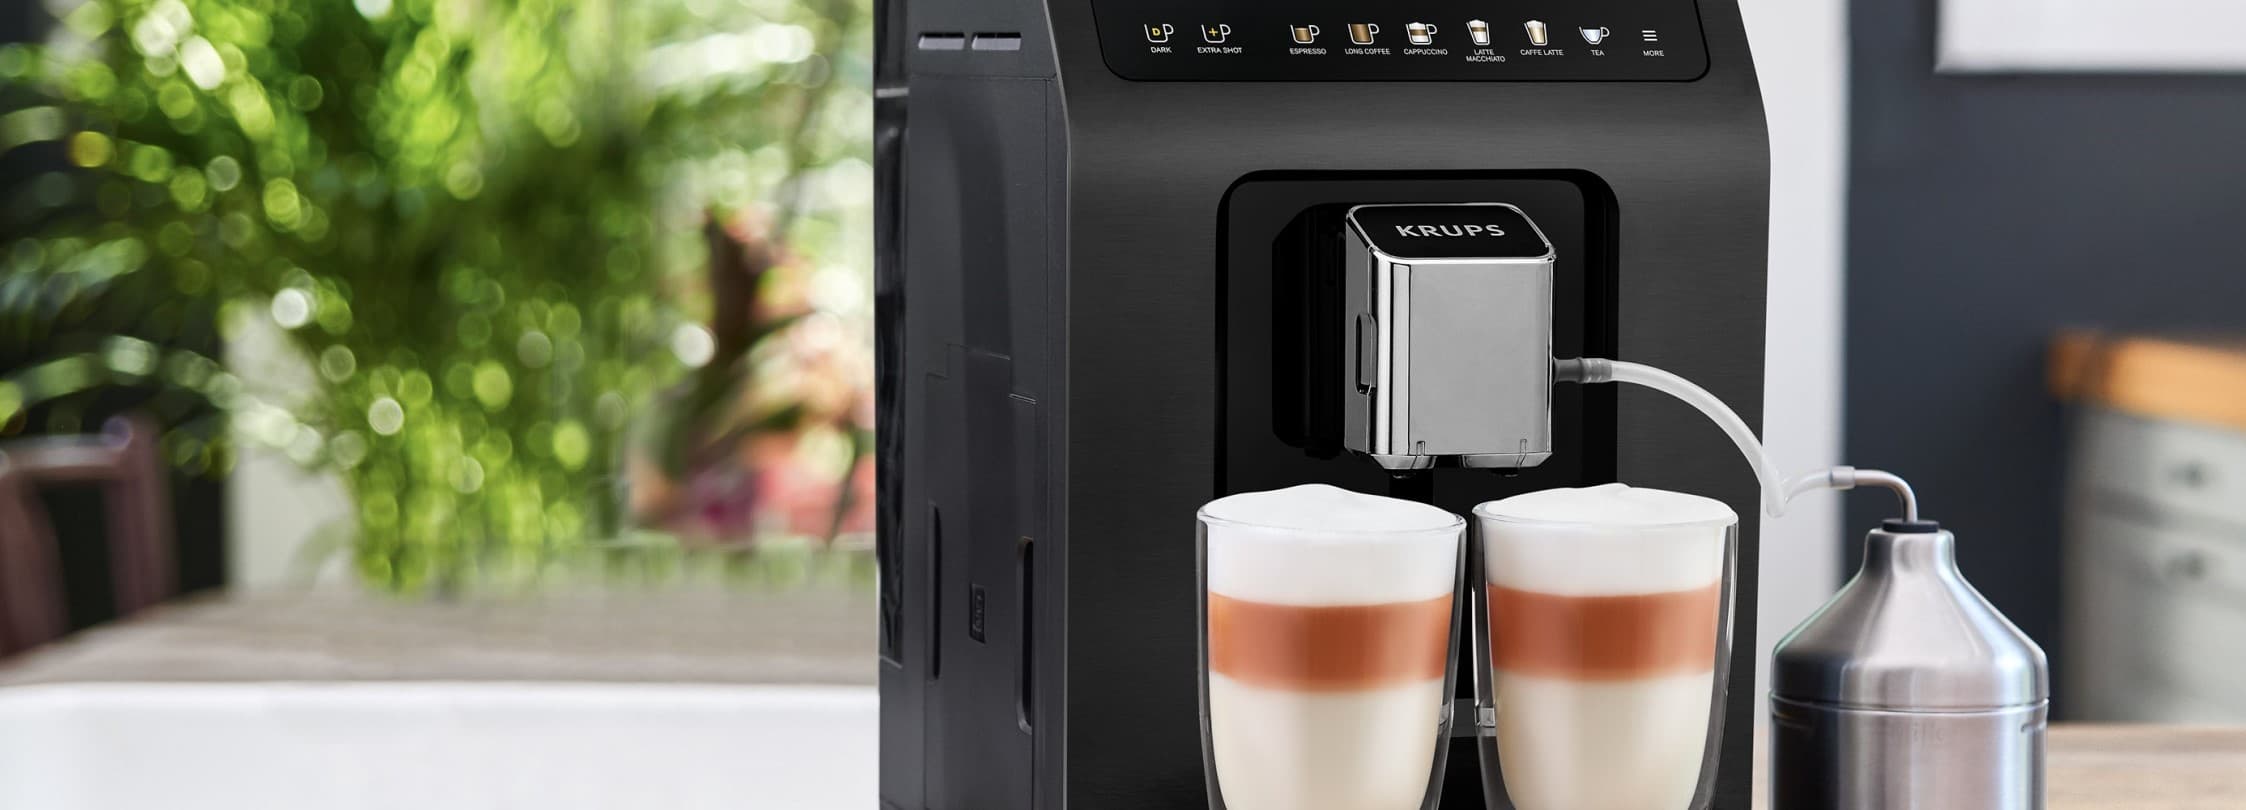 Soldes Machine à café et Cafetière jusqu'à -40% : Profitez-en !